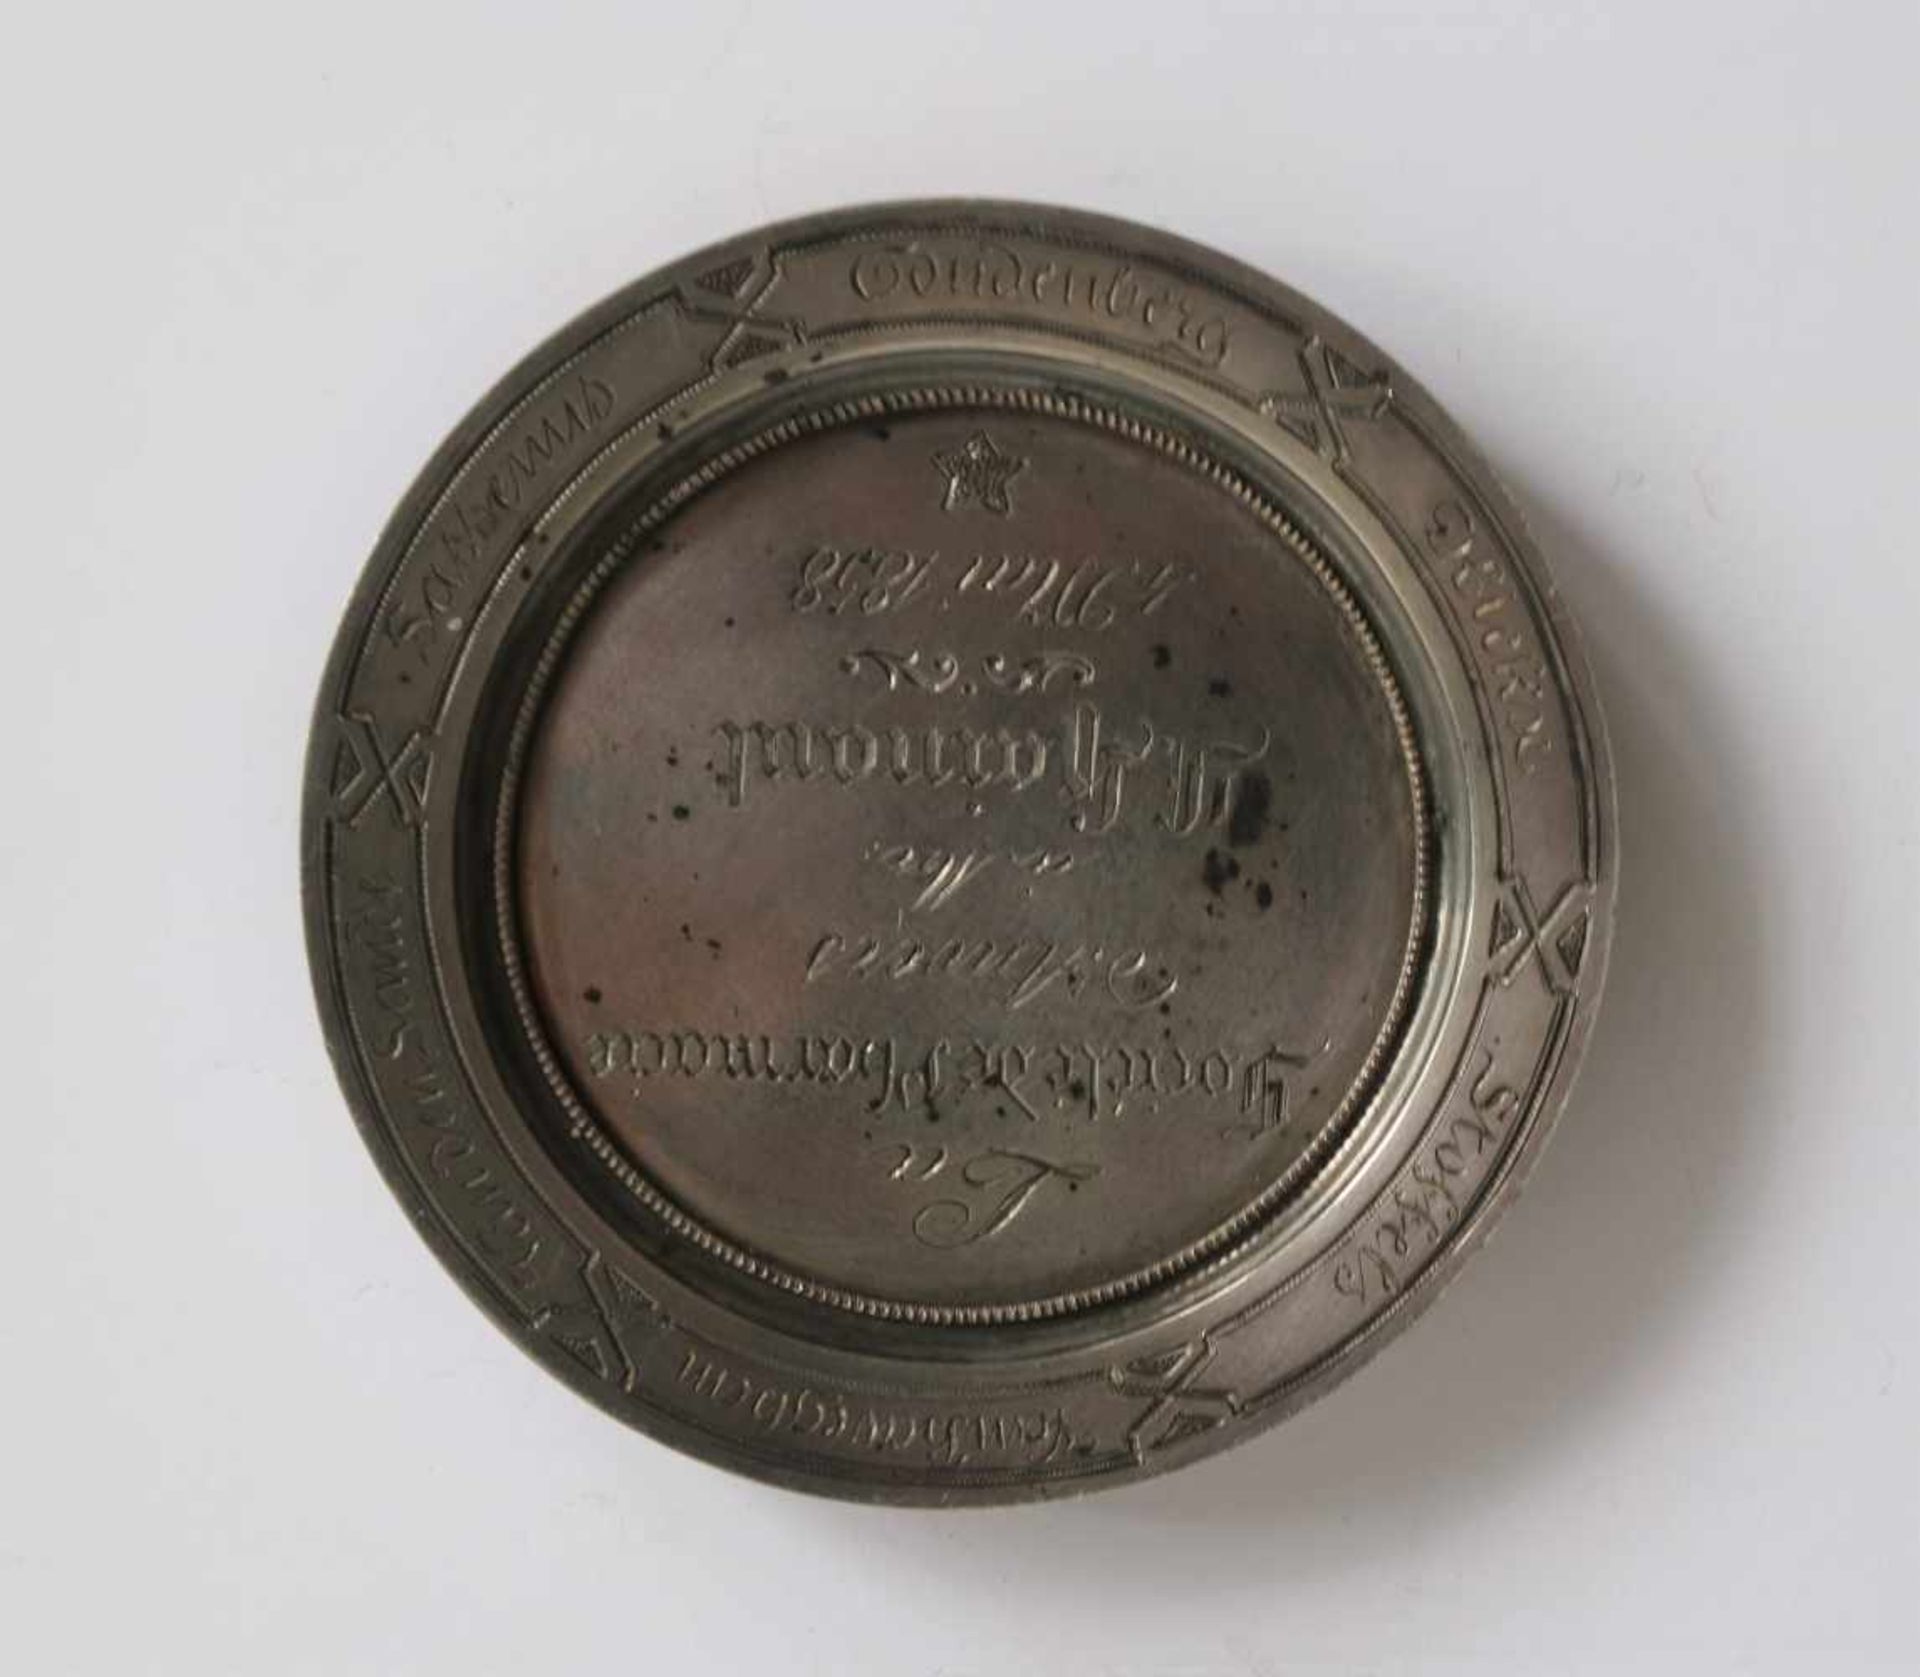 Silver medal Société de pharmacie Antwerp 1858, unique edition dia 6,5 cm - Bild 2 aus 2